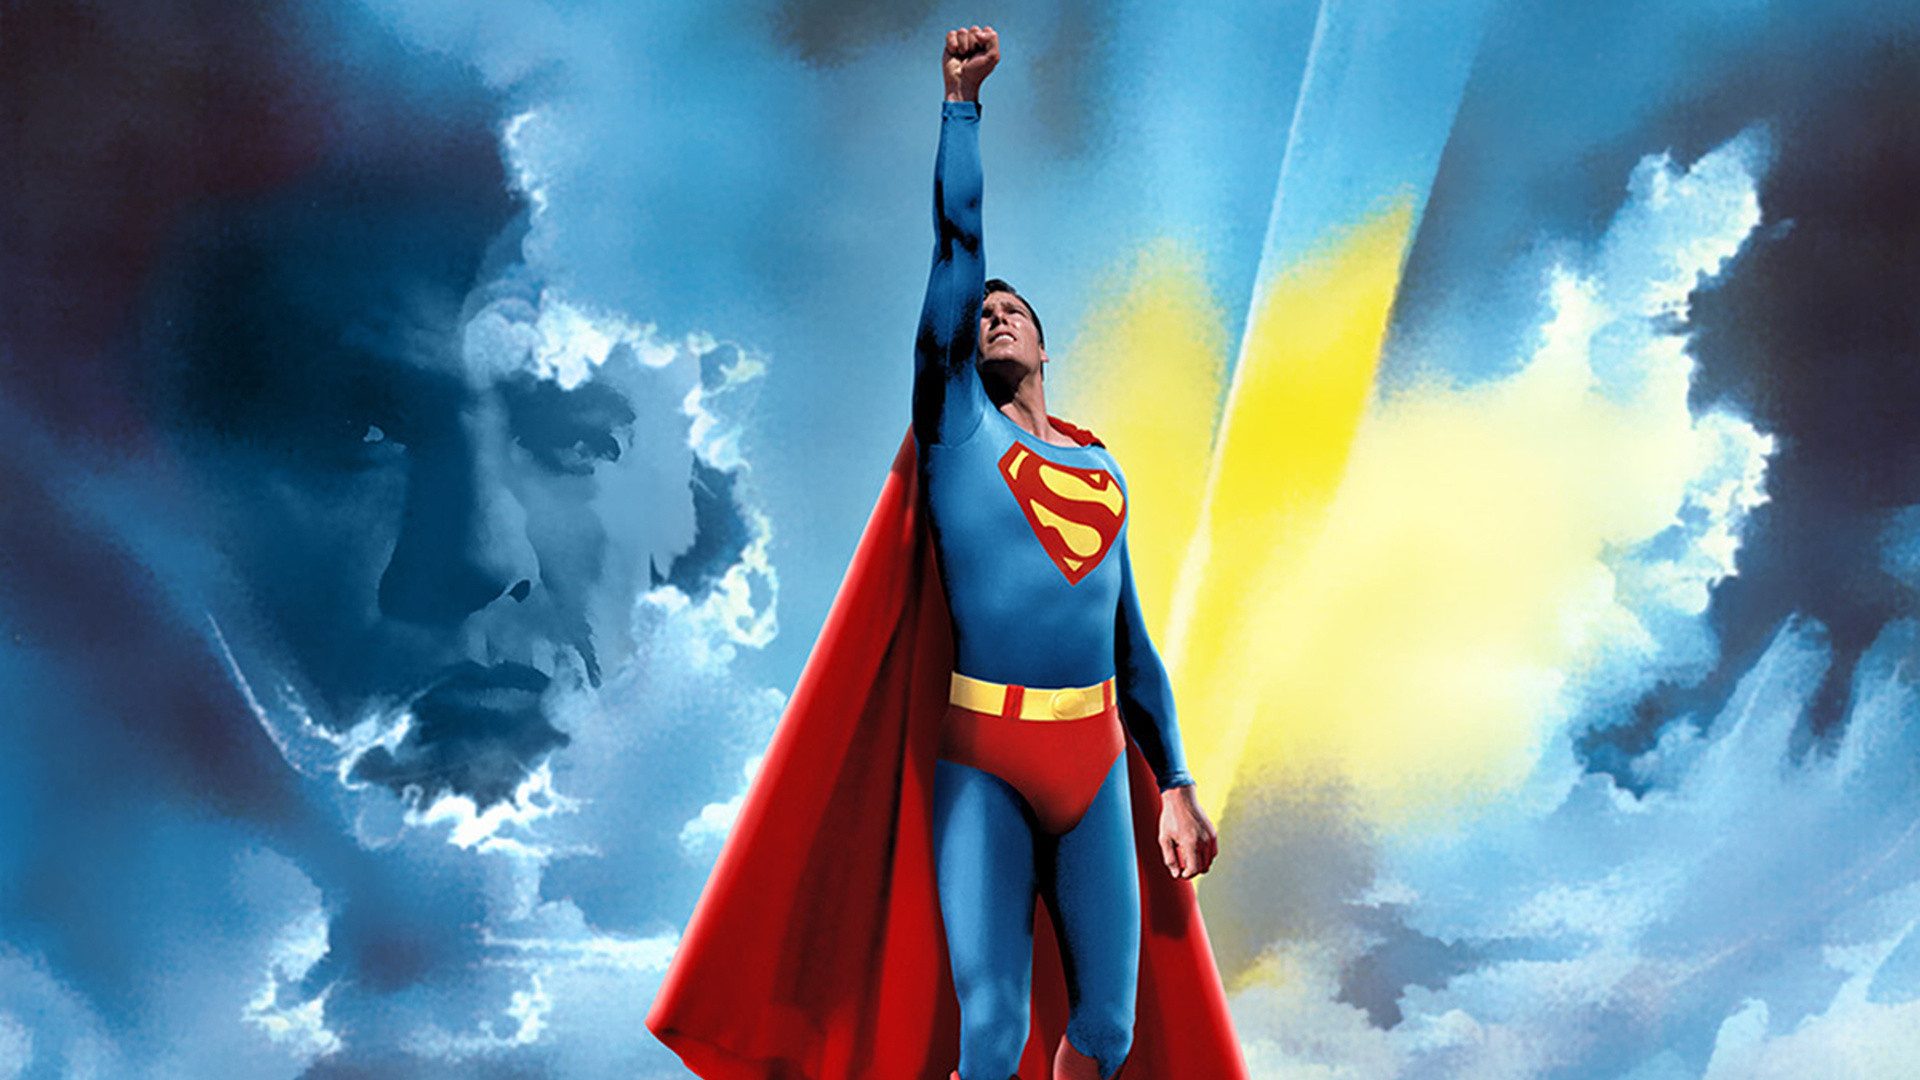 スーパーマンの壁紙,スーパーマン,スーパーヒーロー,架空の人物,正義リーグ,ヒーロー